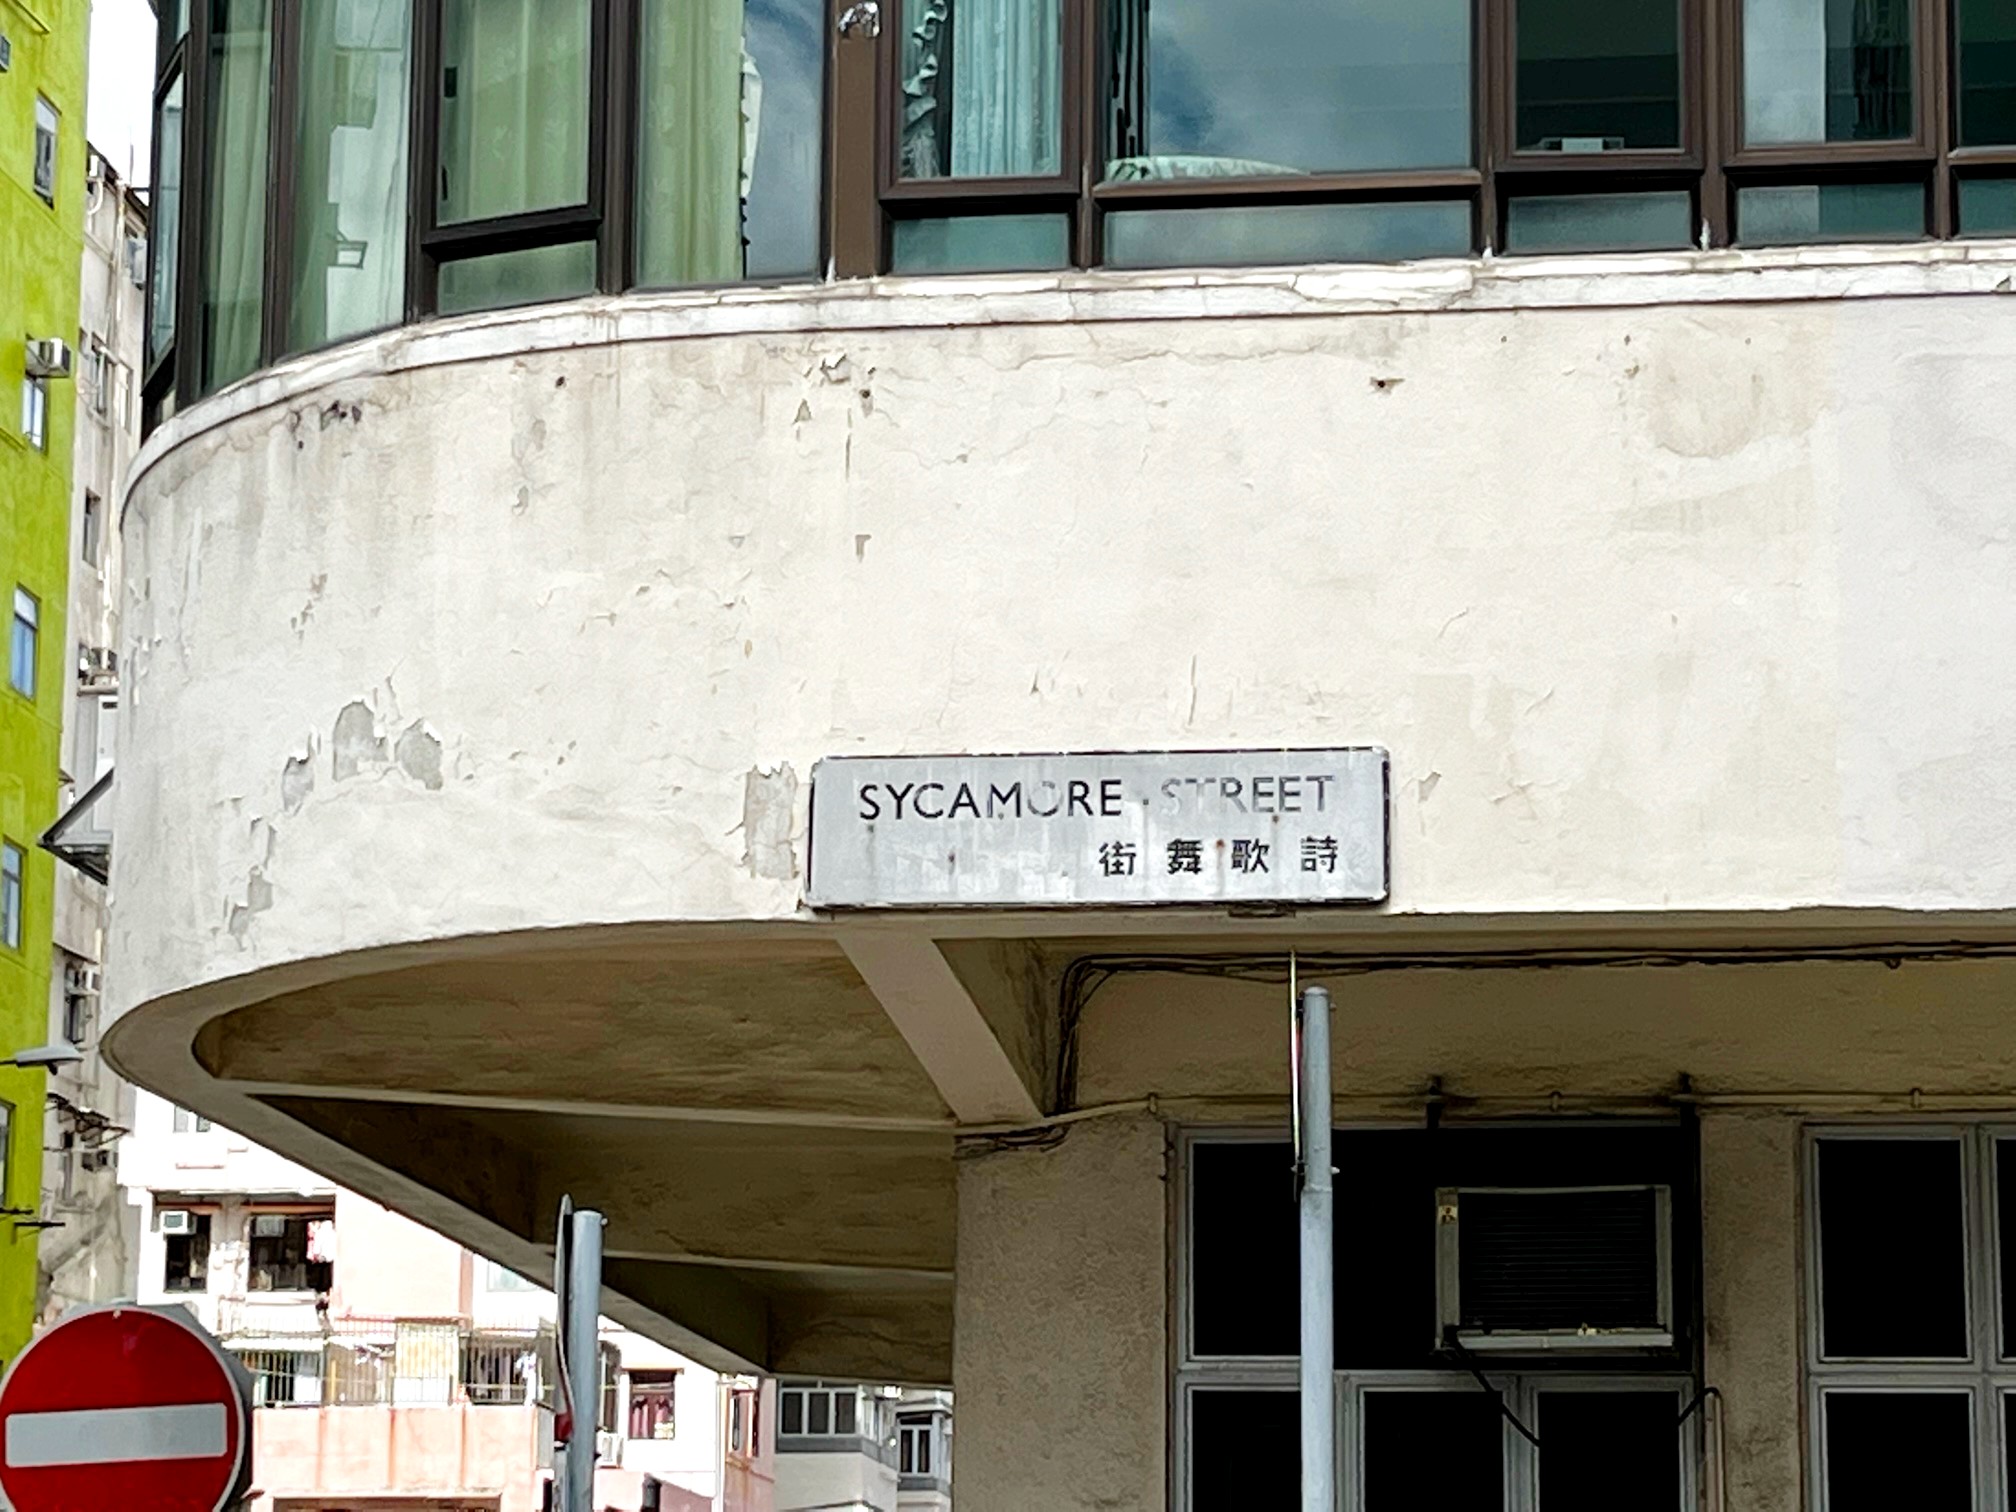 詩歌舞街英文名稱的Sycamore意指「無花果」，轉角處的街牌更是寫上由右至左閱讀的中文字，可見歷史悠久。